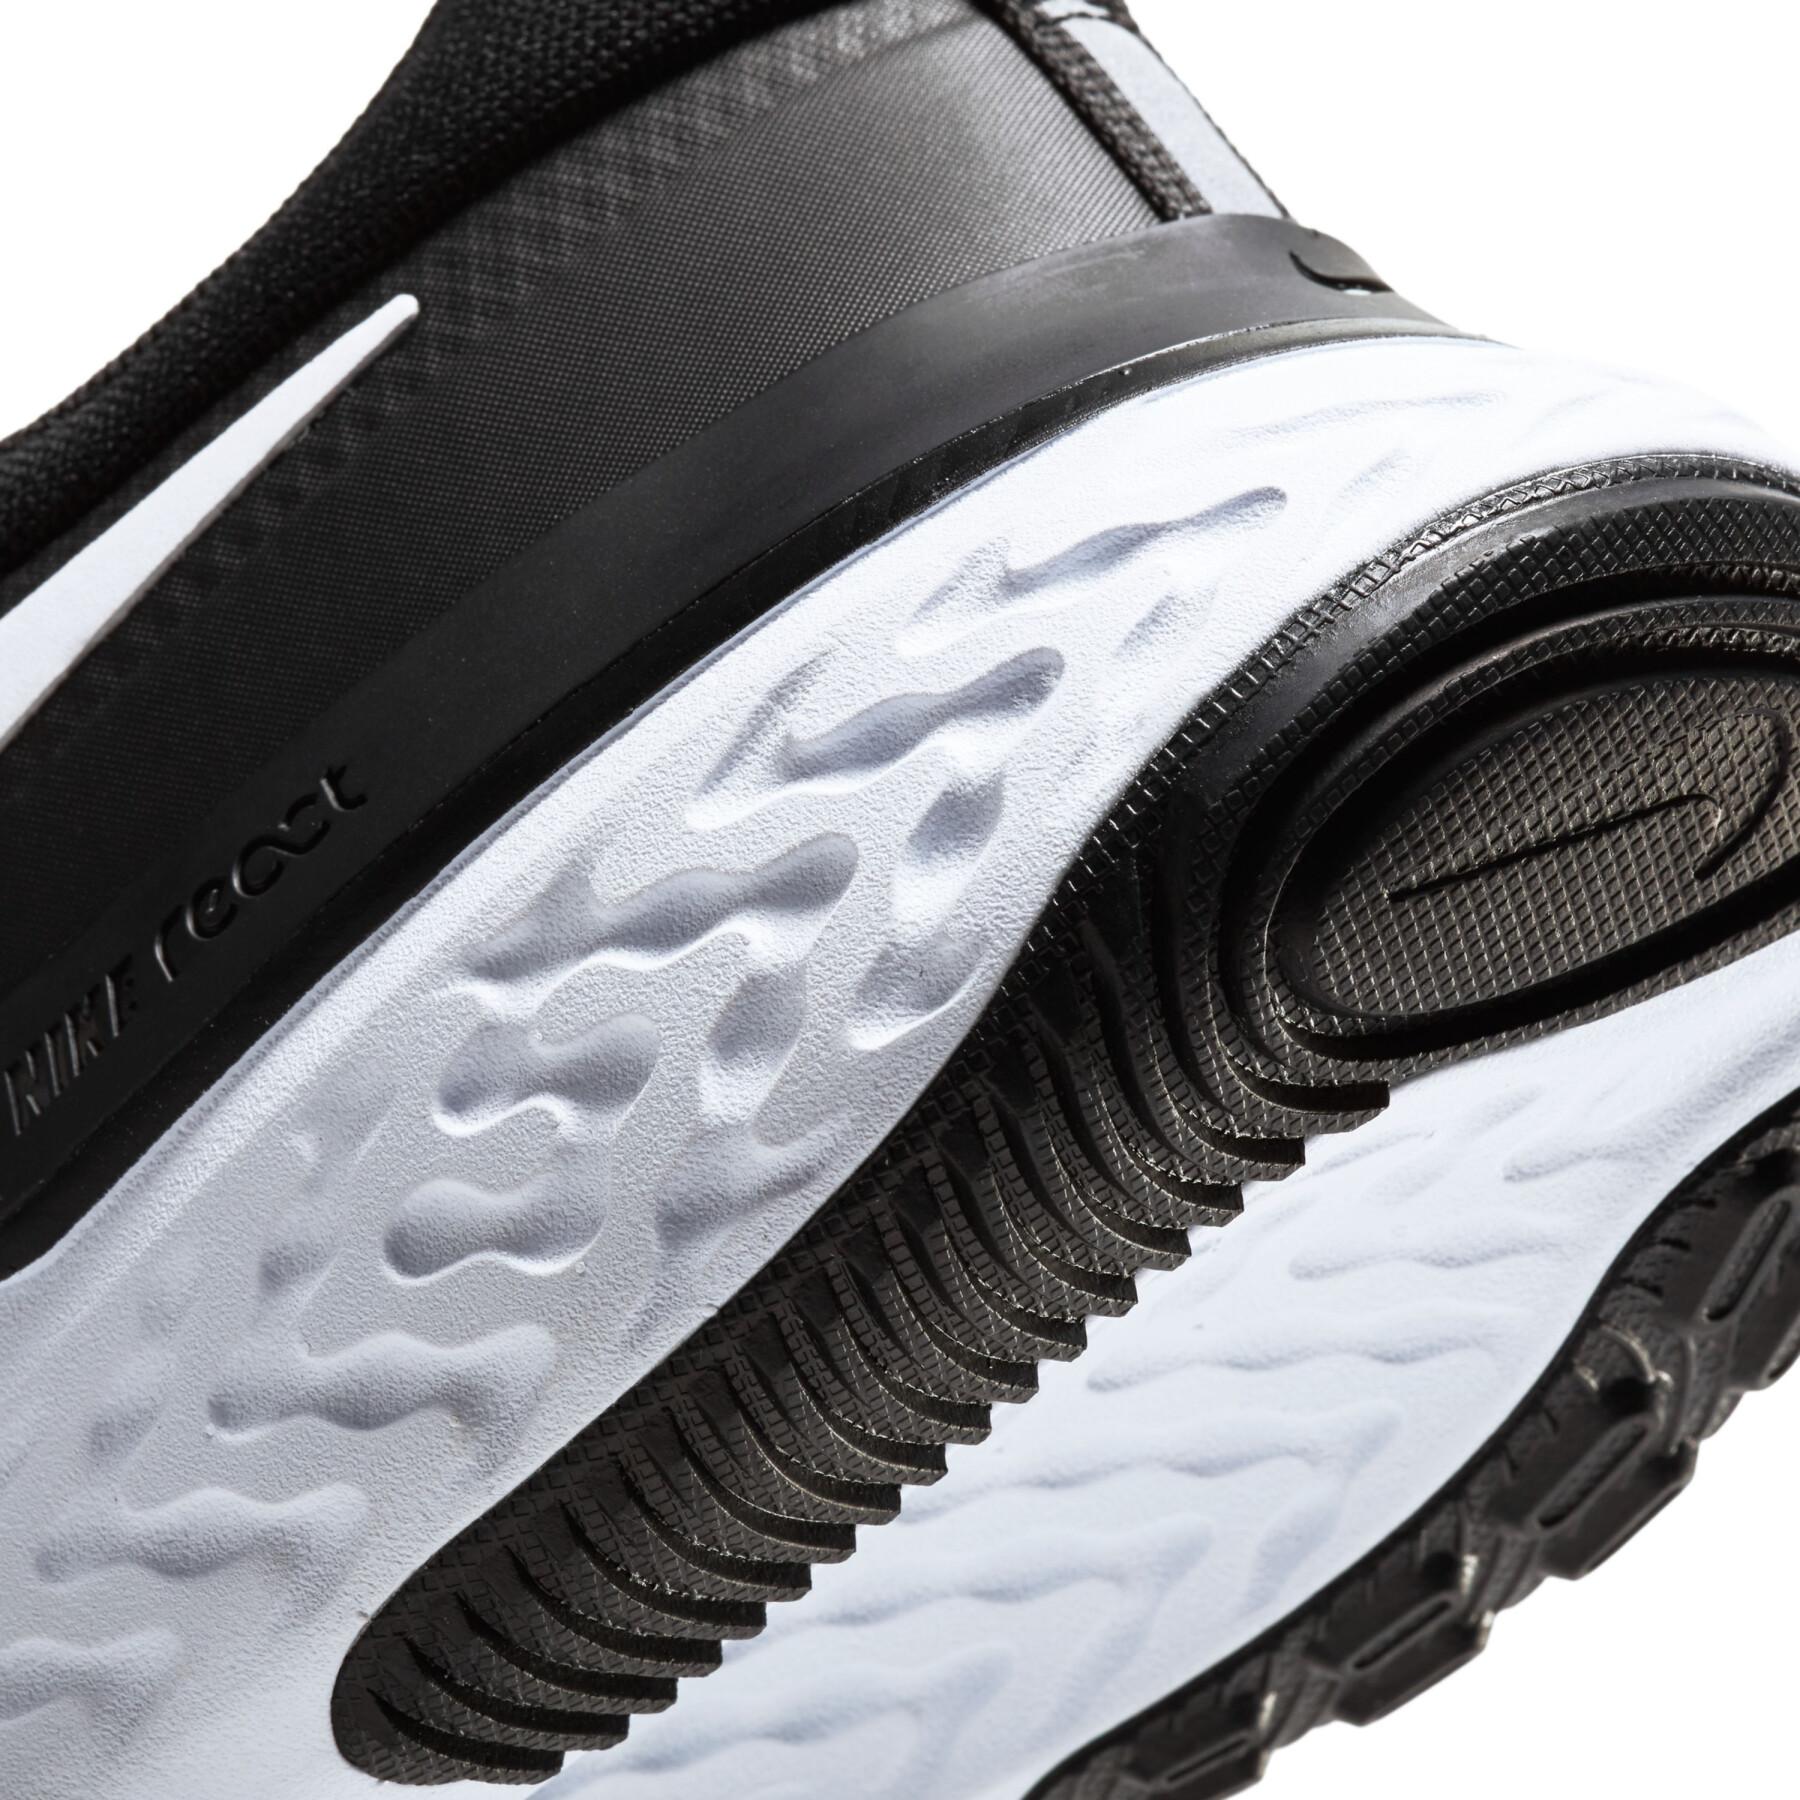 Chaussures de running Nike React Miler